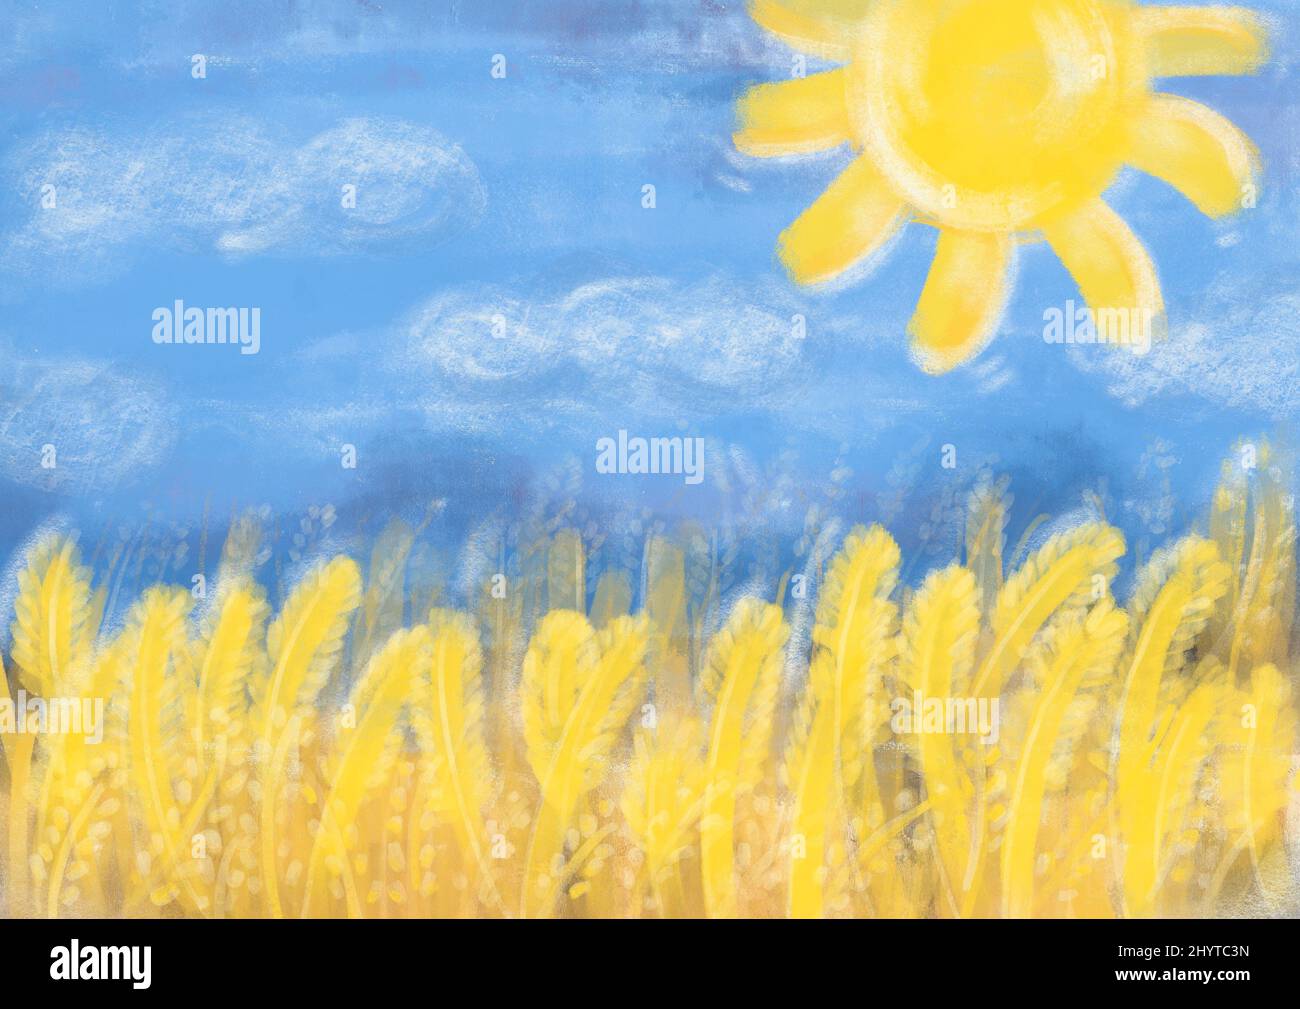 Guerra in Ucraina con la Russia. Cartoline per la pace , non vogliamo la guerra. Il sole, il cielo blu e il campo di grano sono gialli come simbolo di pace e prosperità. Alta qualità. Disegno a matita . Spazio di copia Foto Stock